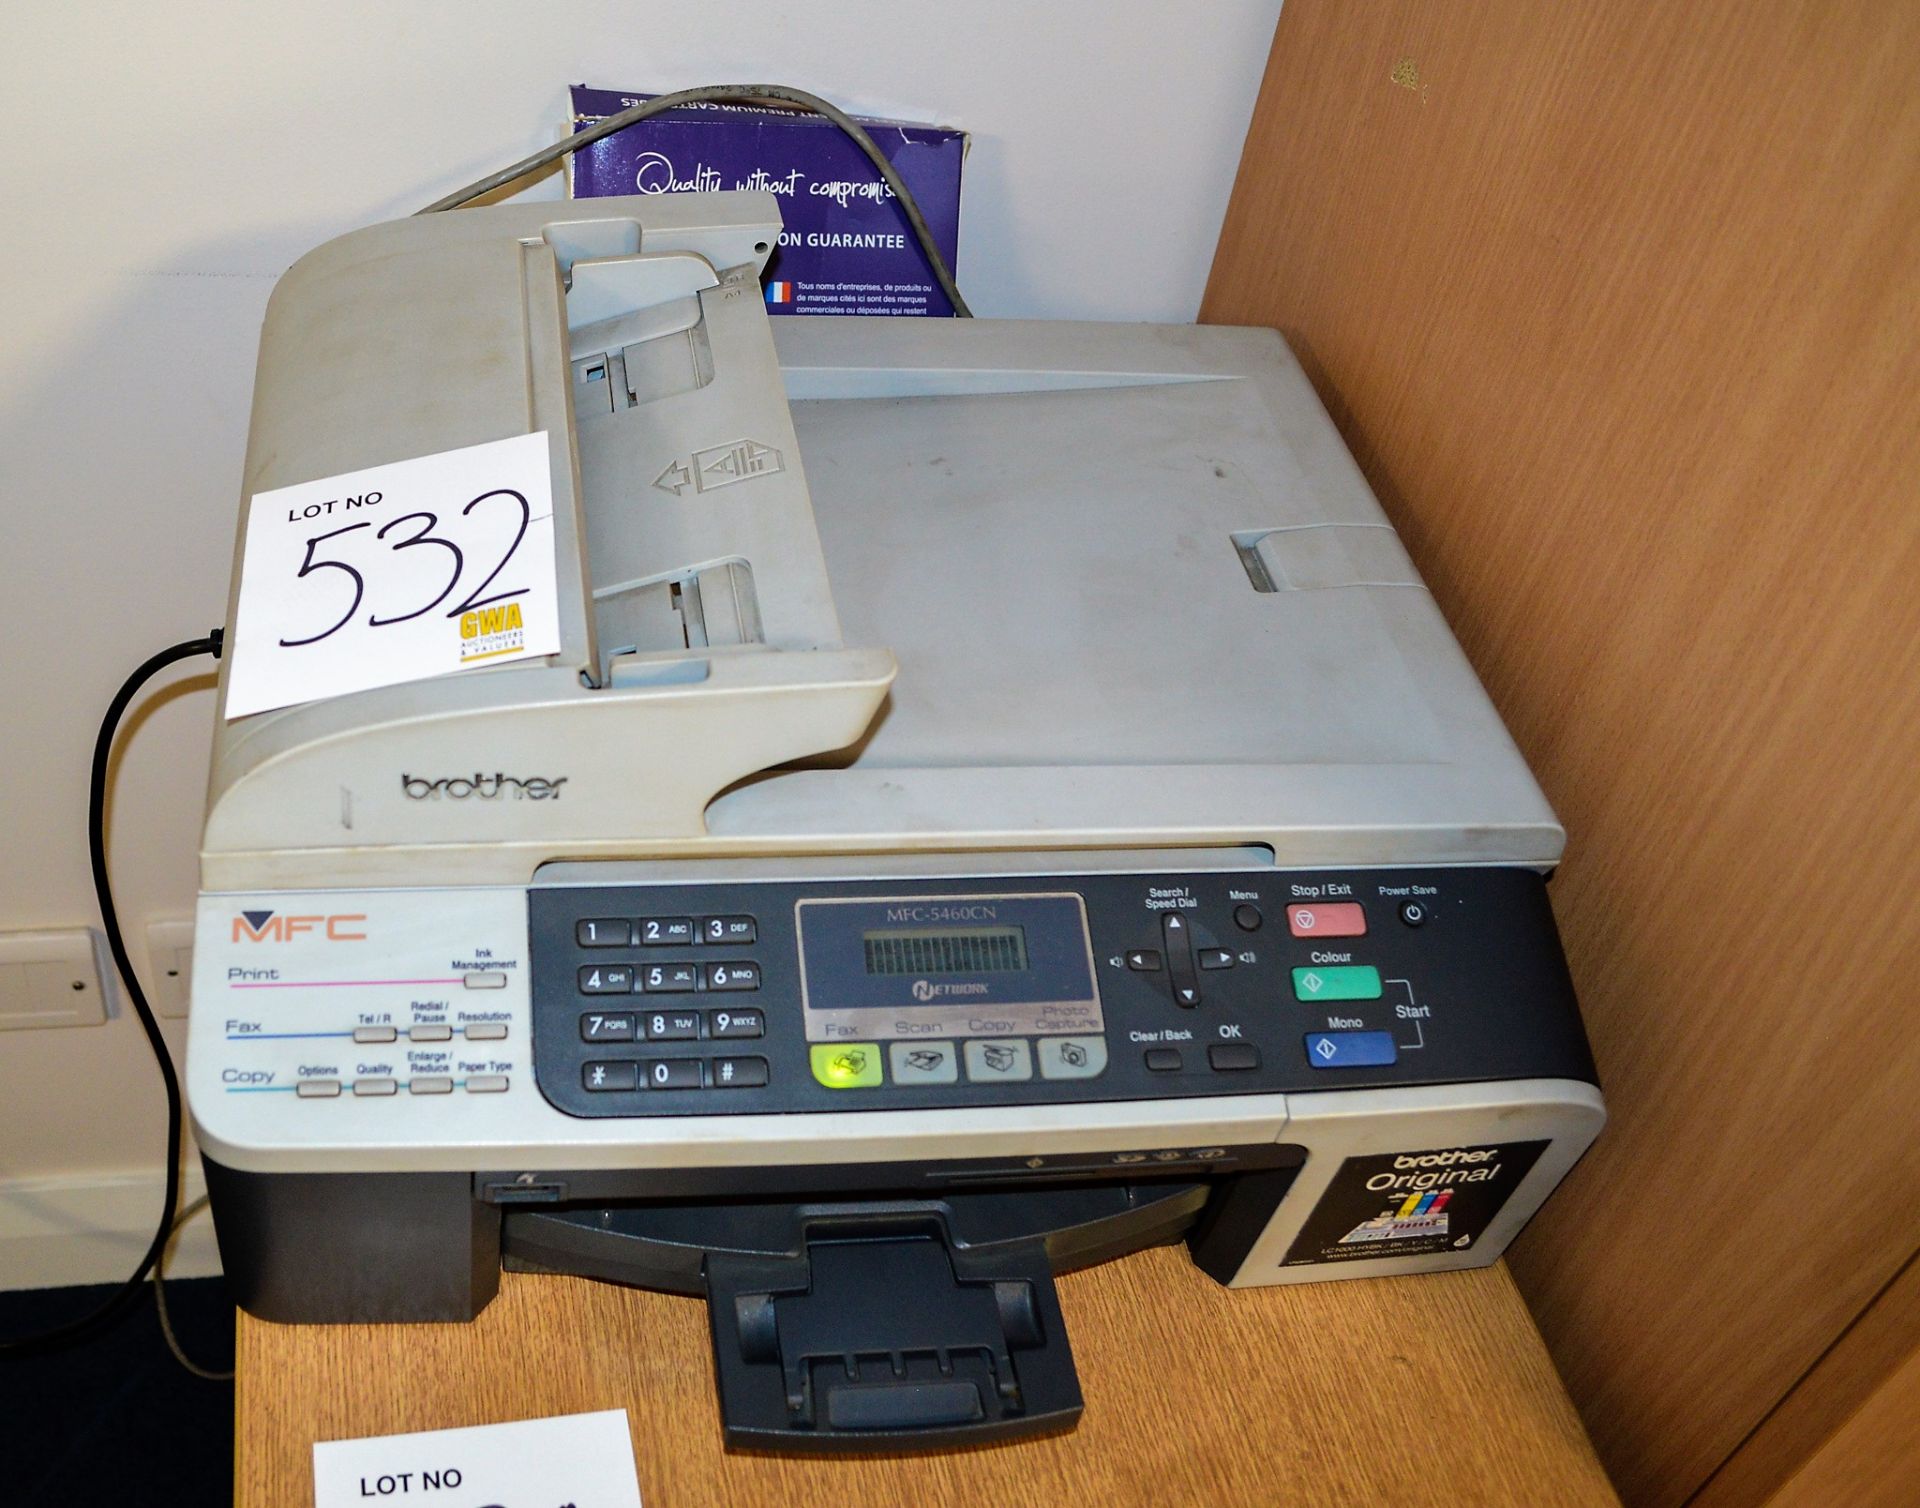 Brother MFC 5460 printer/scanner